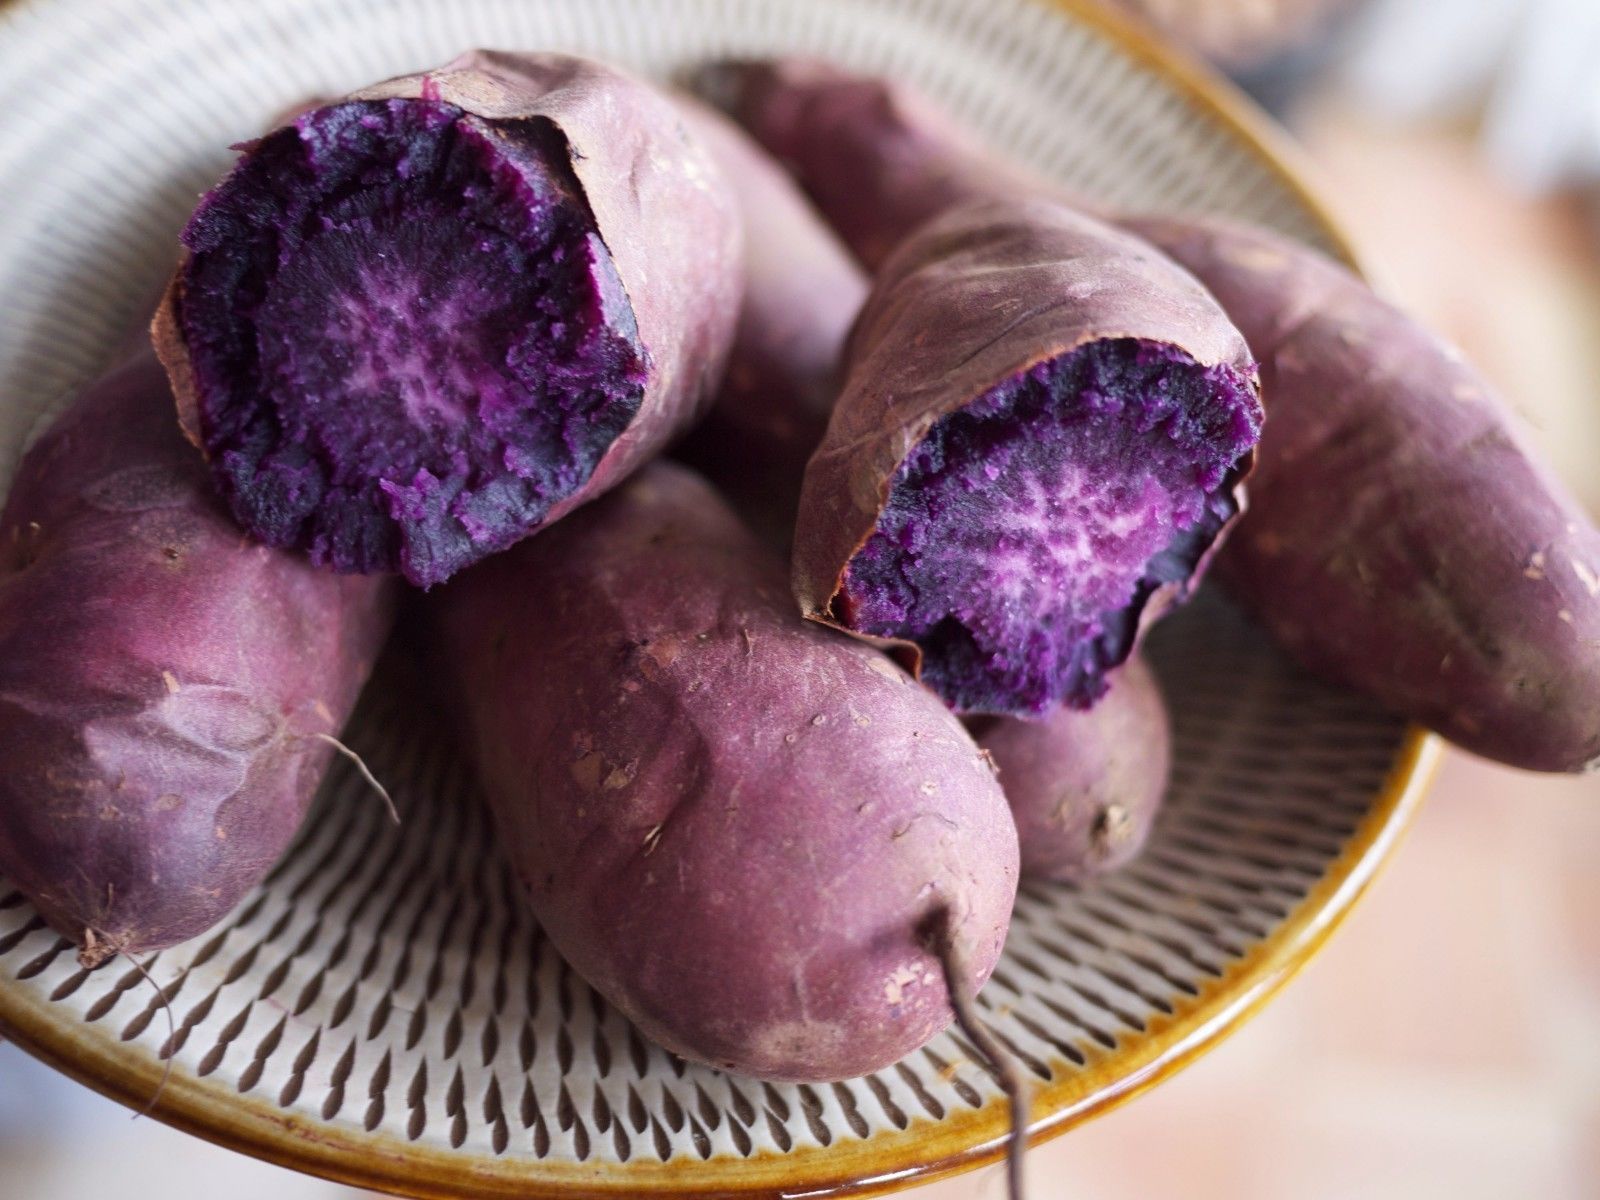 Japanese Purple Sweet Potato,(Bulk Tuber) Organic,For Eating or ...